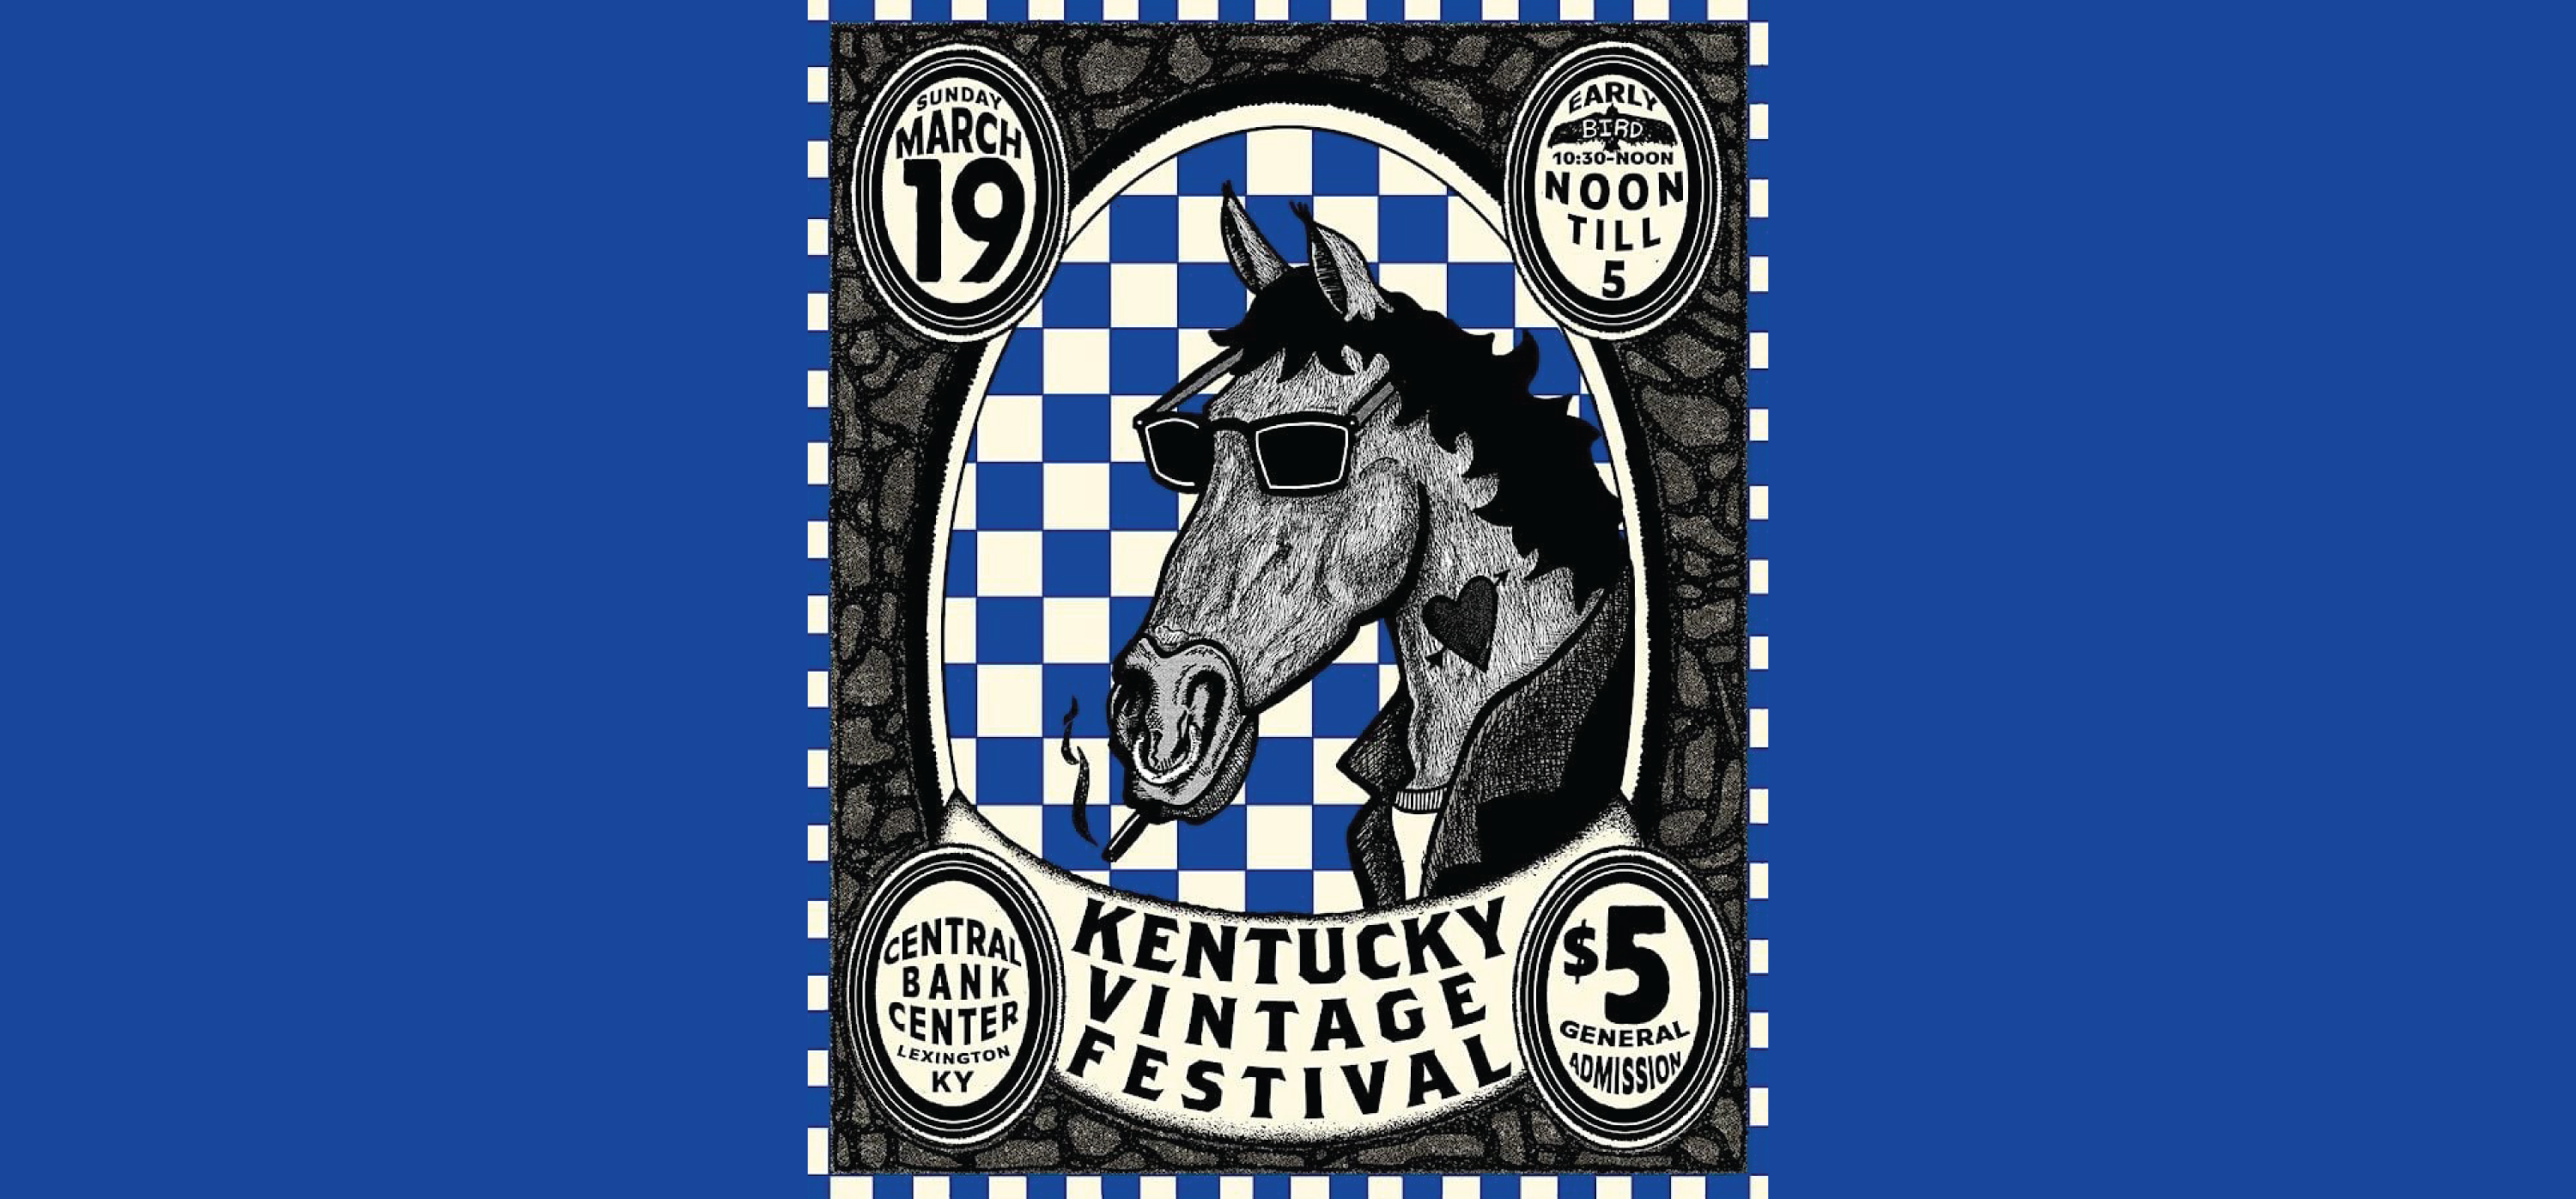 Kentucky Vintage Fest 